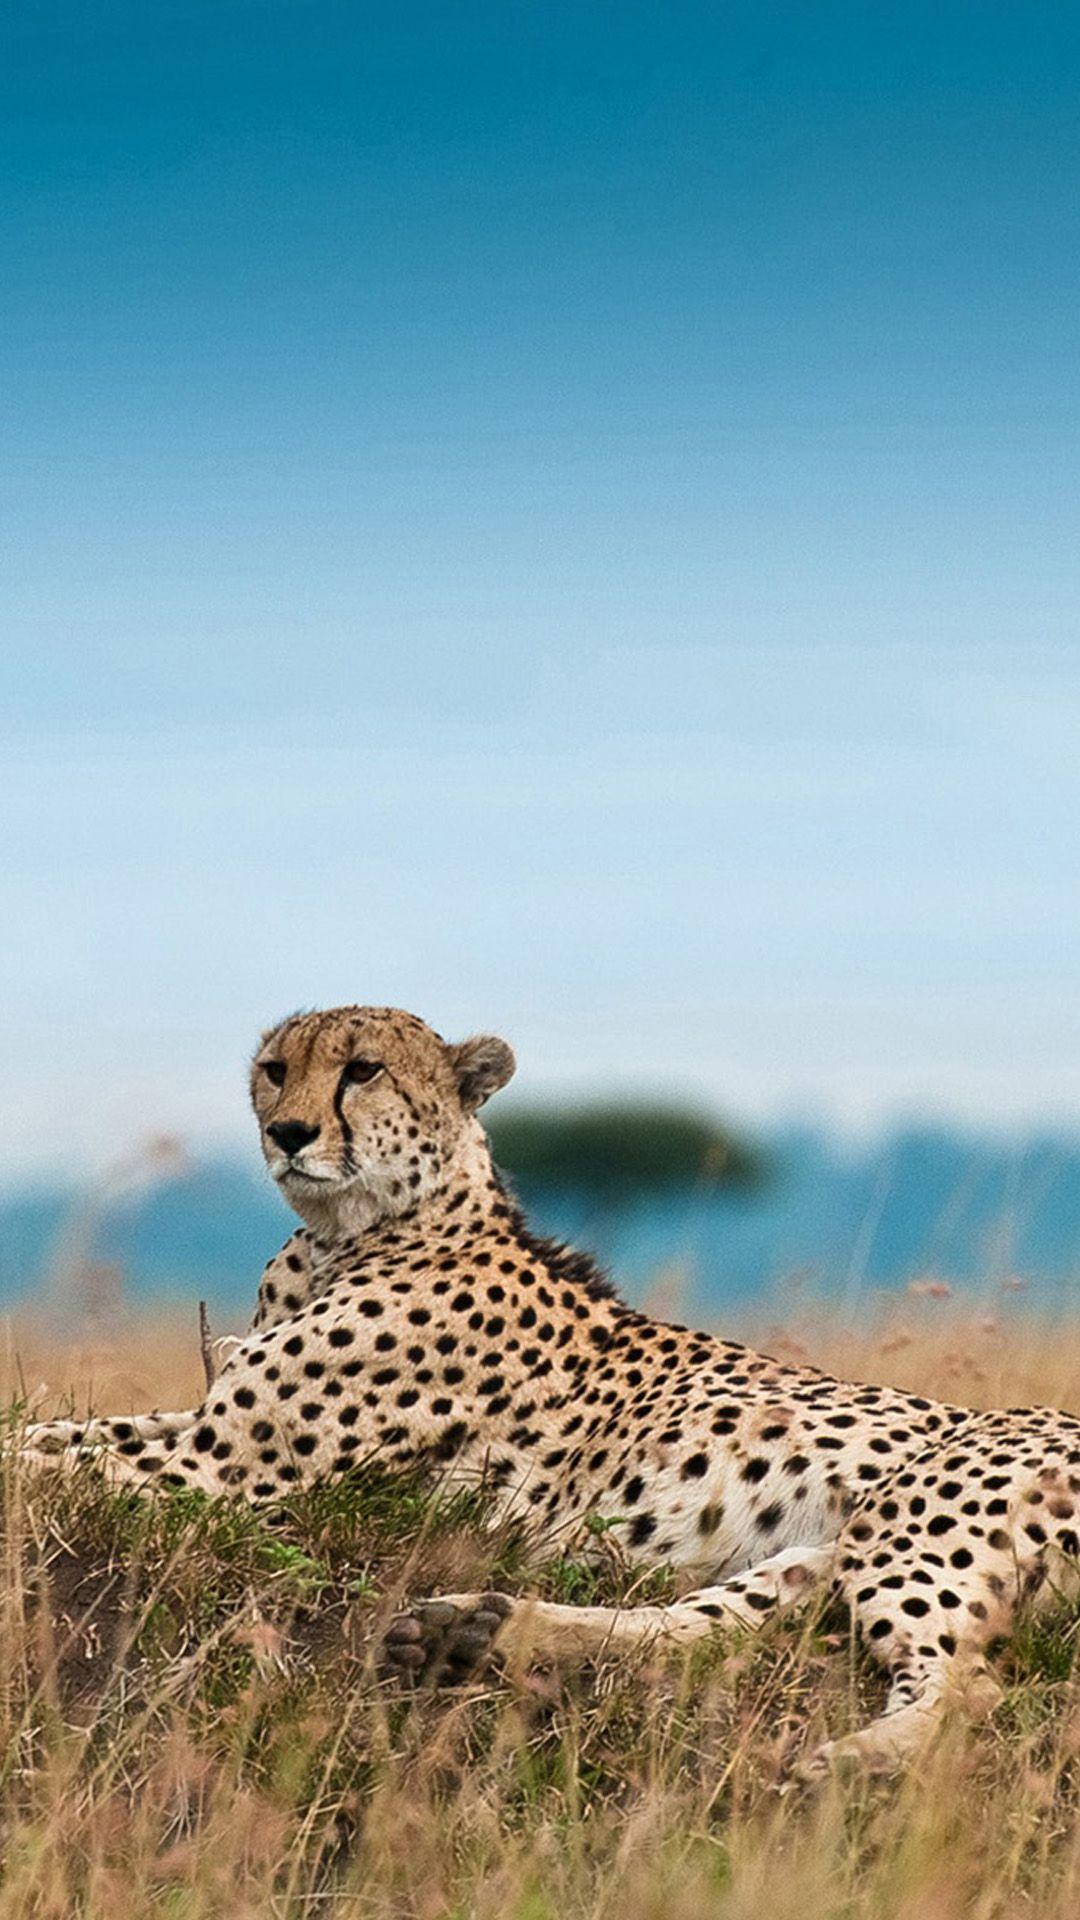 South Africa Leopard. Cat wallpaper, Cheetah wallpaper